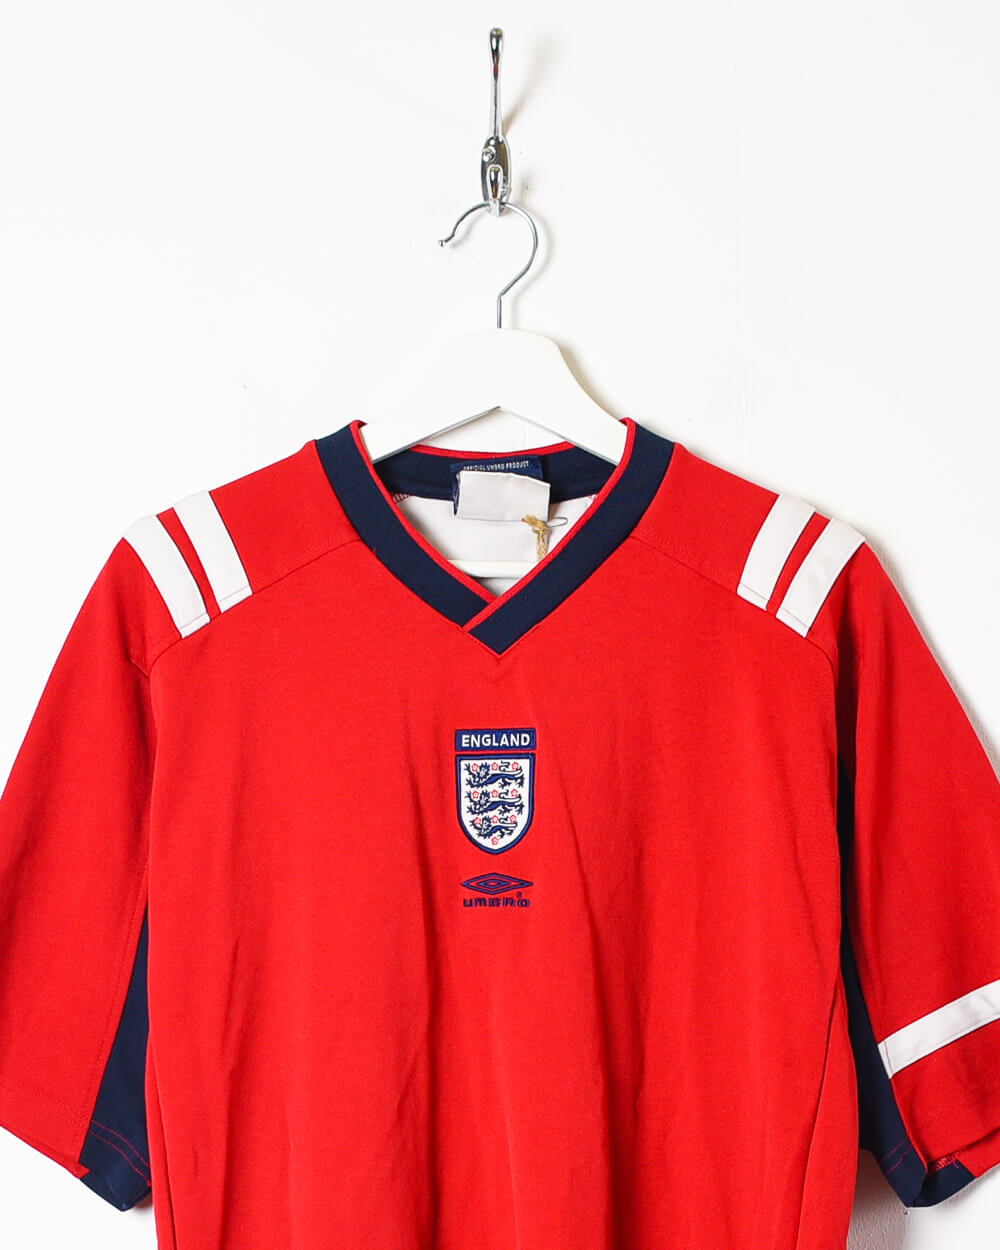 Red Umbro England 2004/05 Training Football Shirt - Large